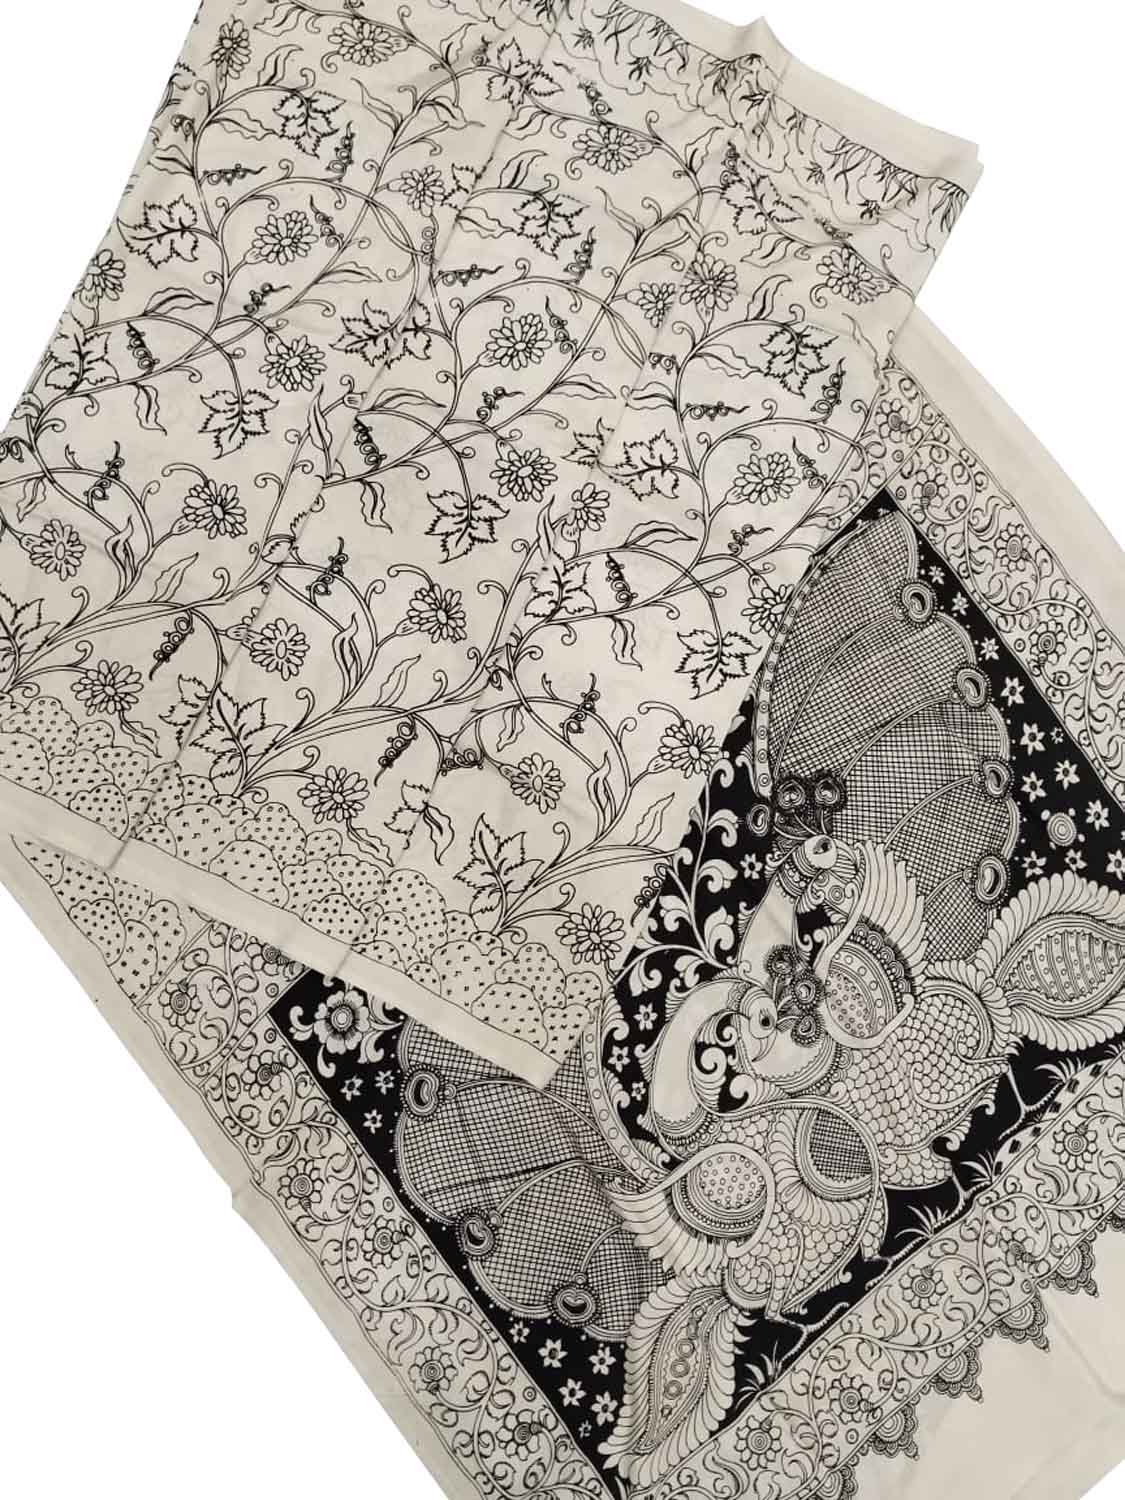 Elegant Hand Painted Chennur Silk Saree in Black and White - Luxurion World